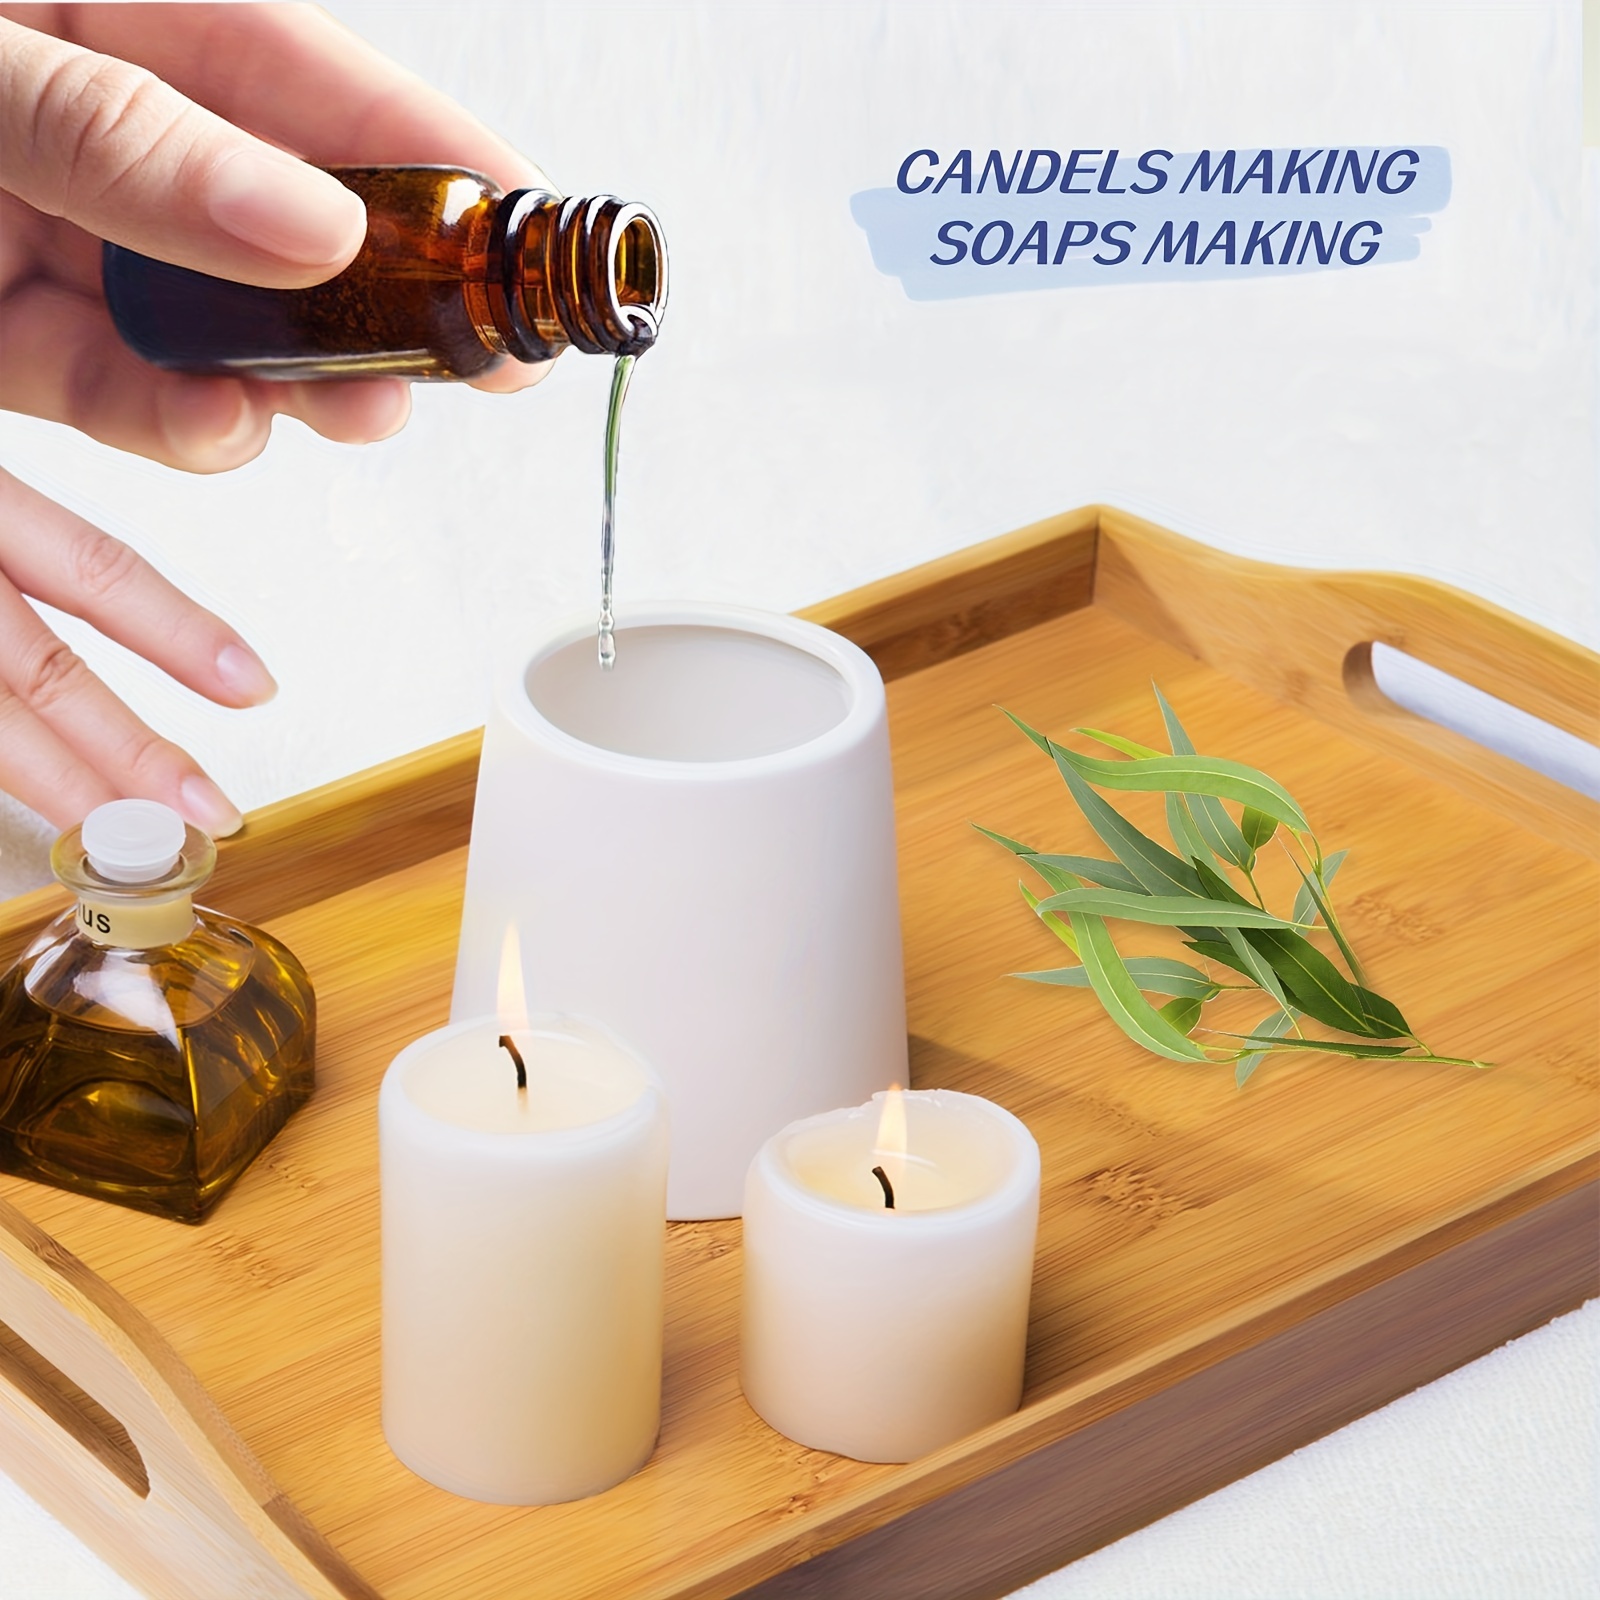 Hiqili 1.01 Fl Vanilla Essential Oil For Diffuser Humidifier - Temu